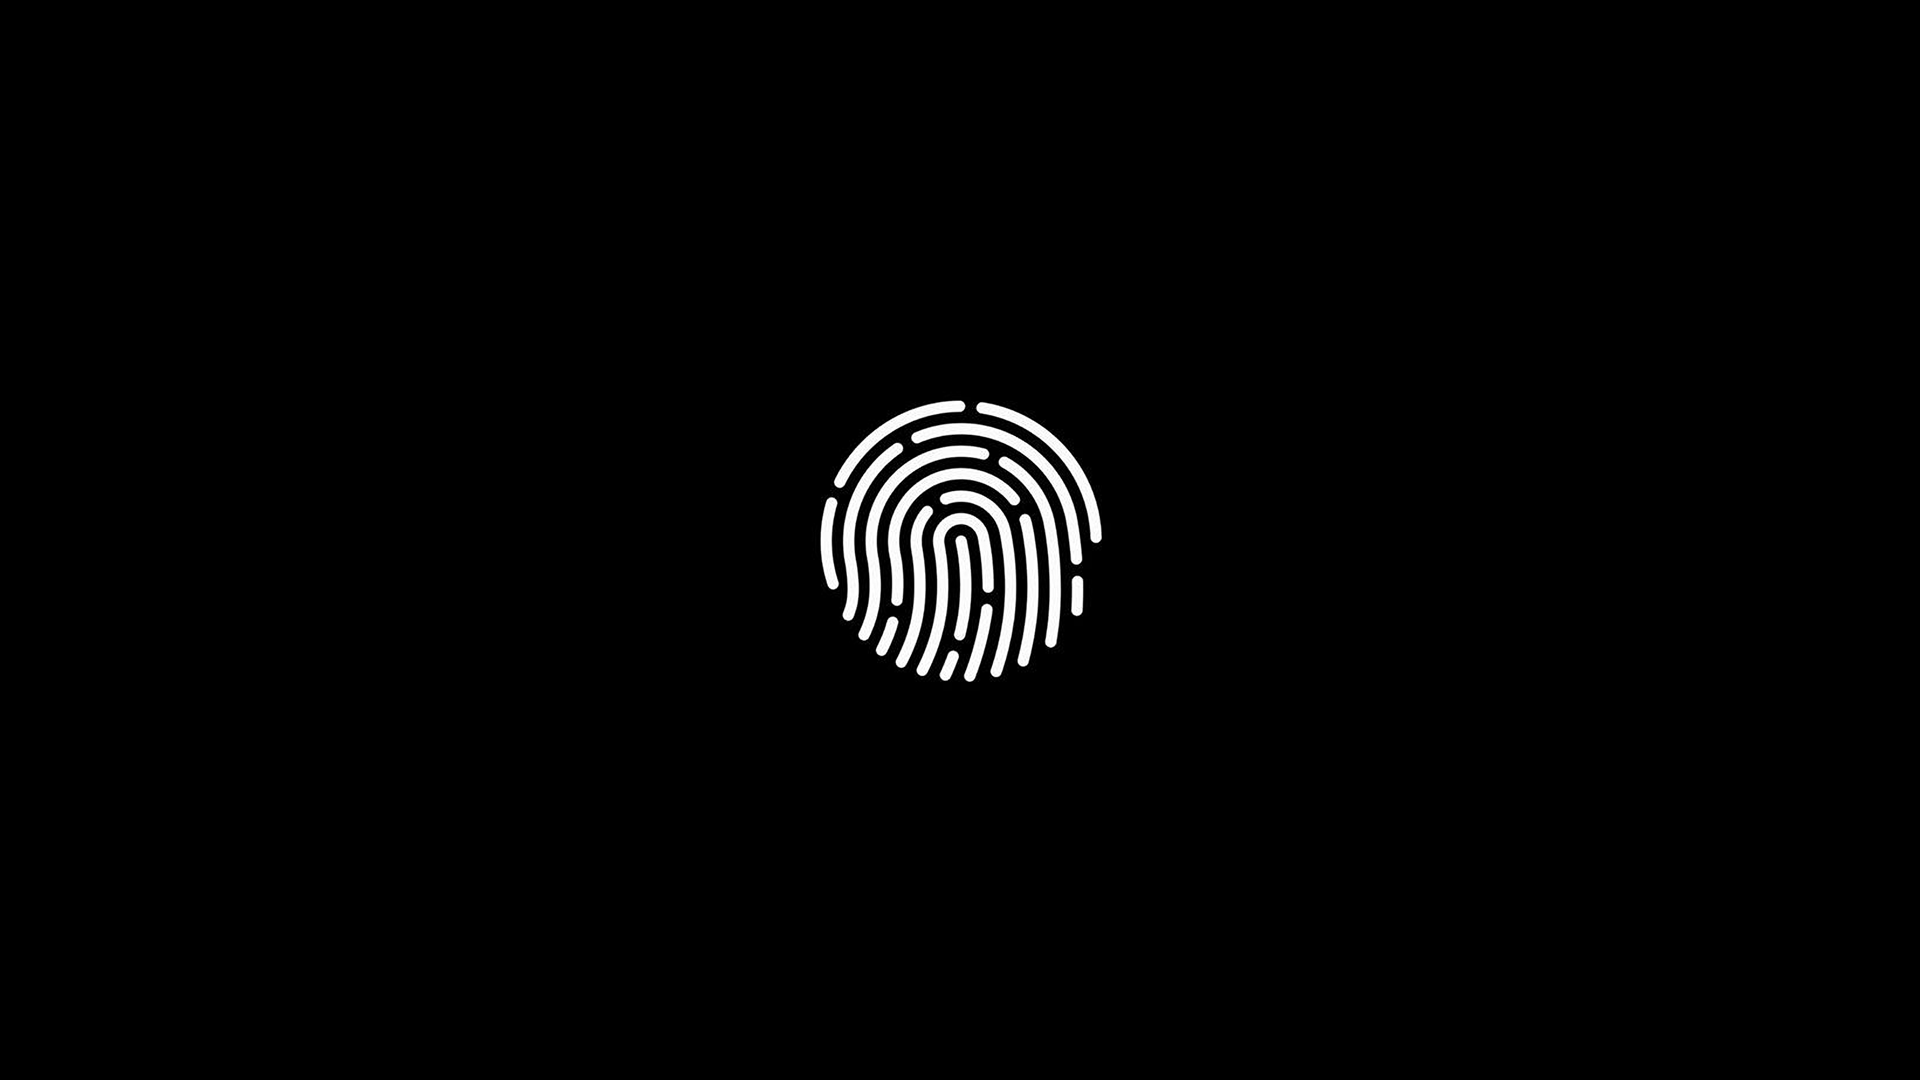 General 1920x1080 simple background minimalism fingerprint black background black